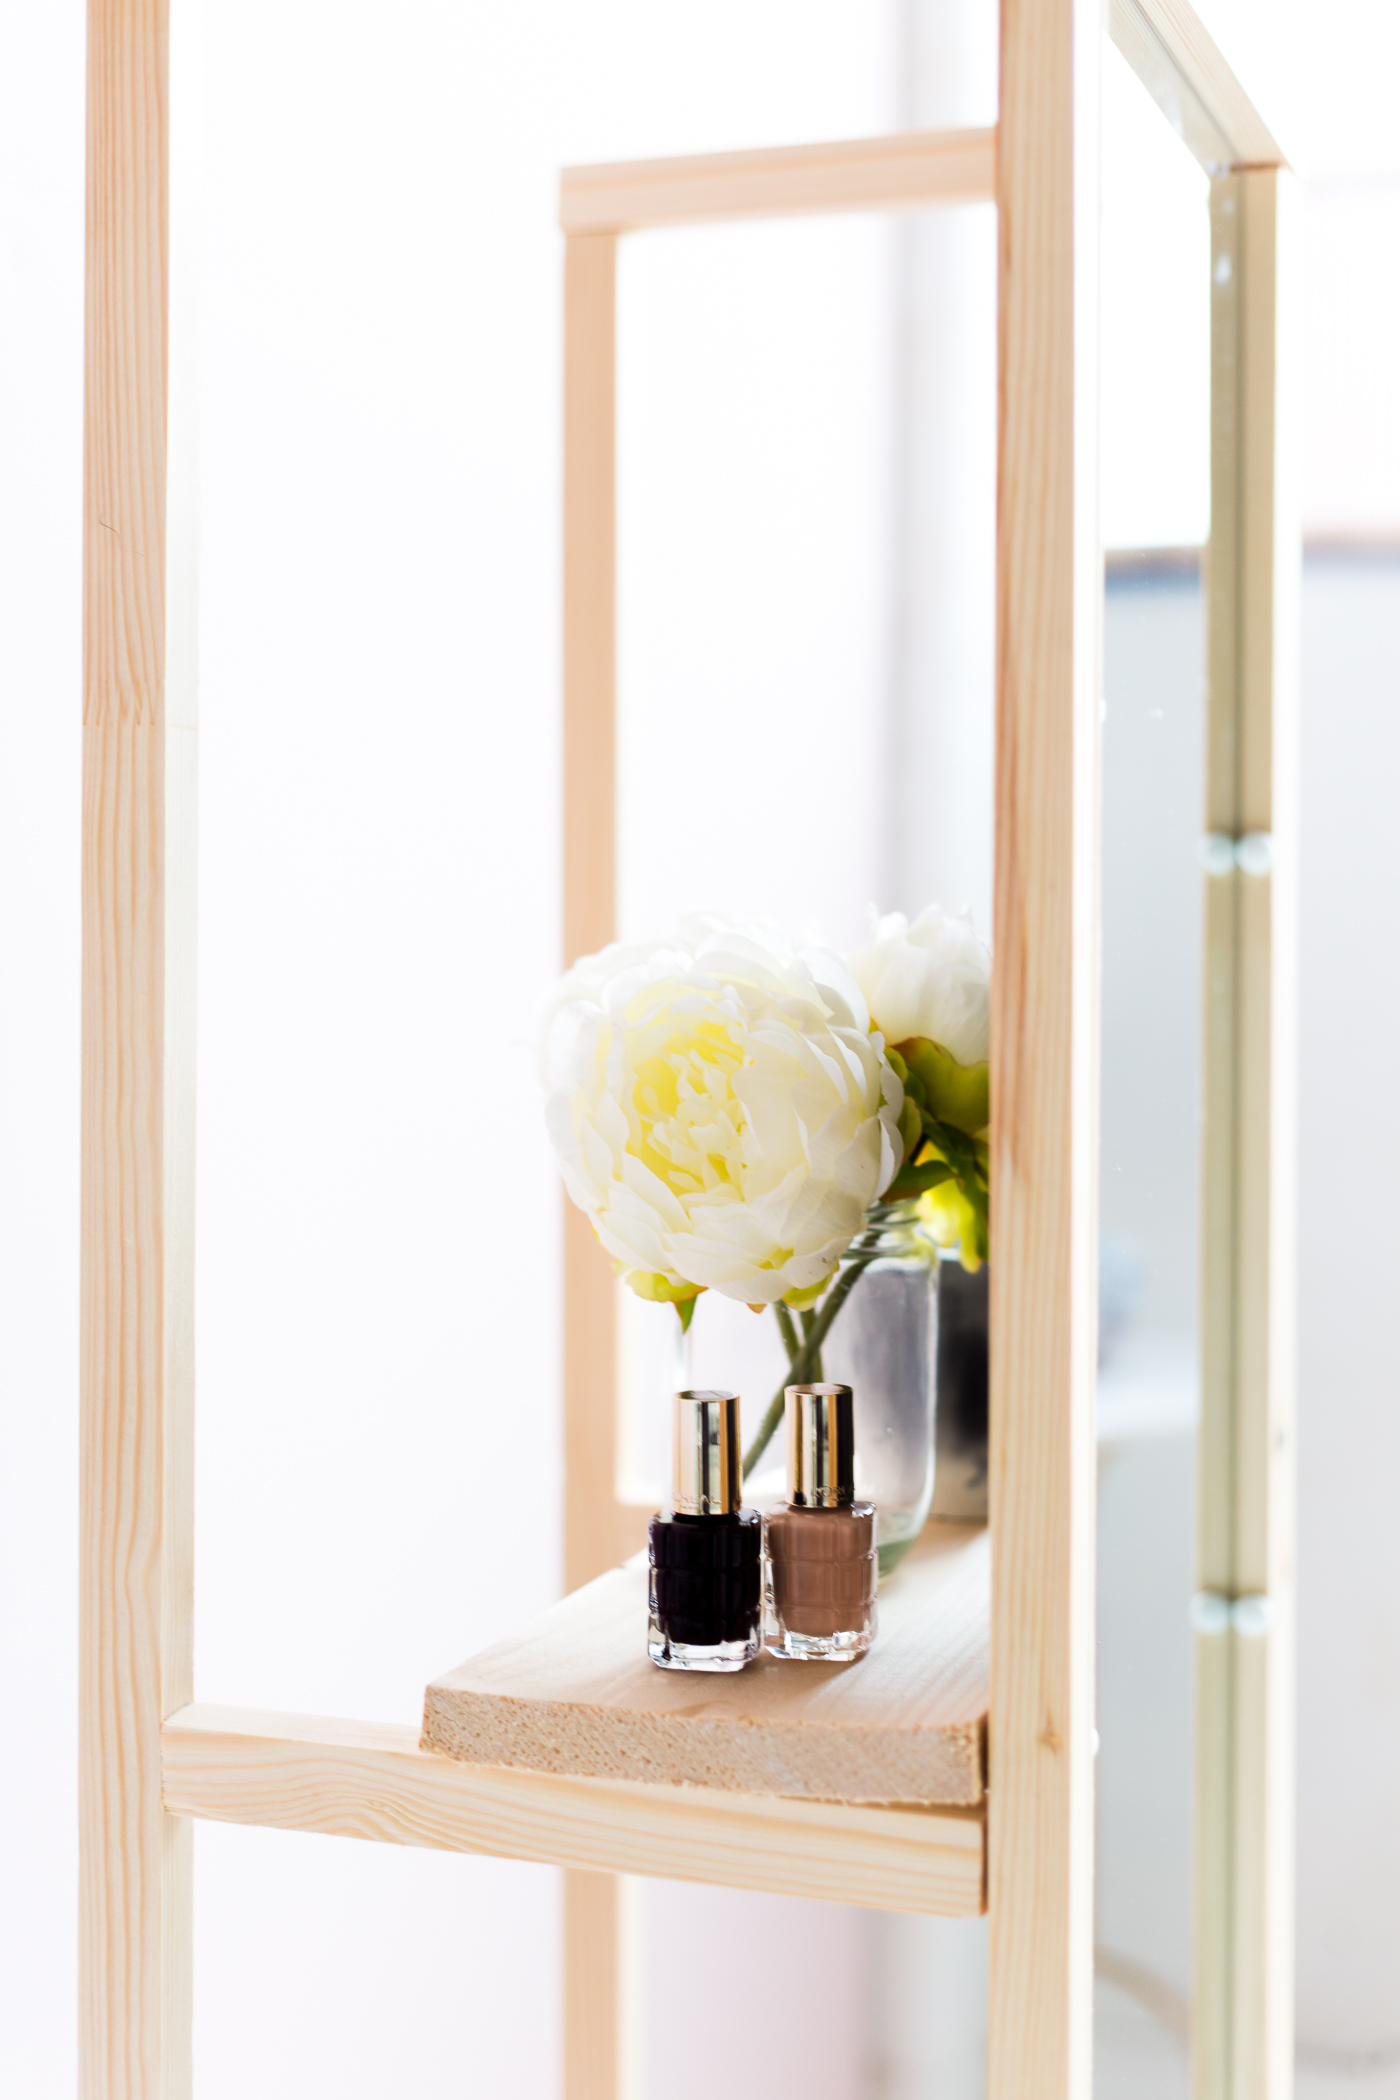 DIY Wooden Floor Standing Mirror with Useful Shelf